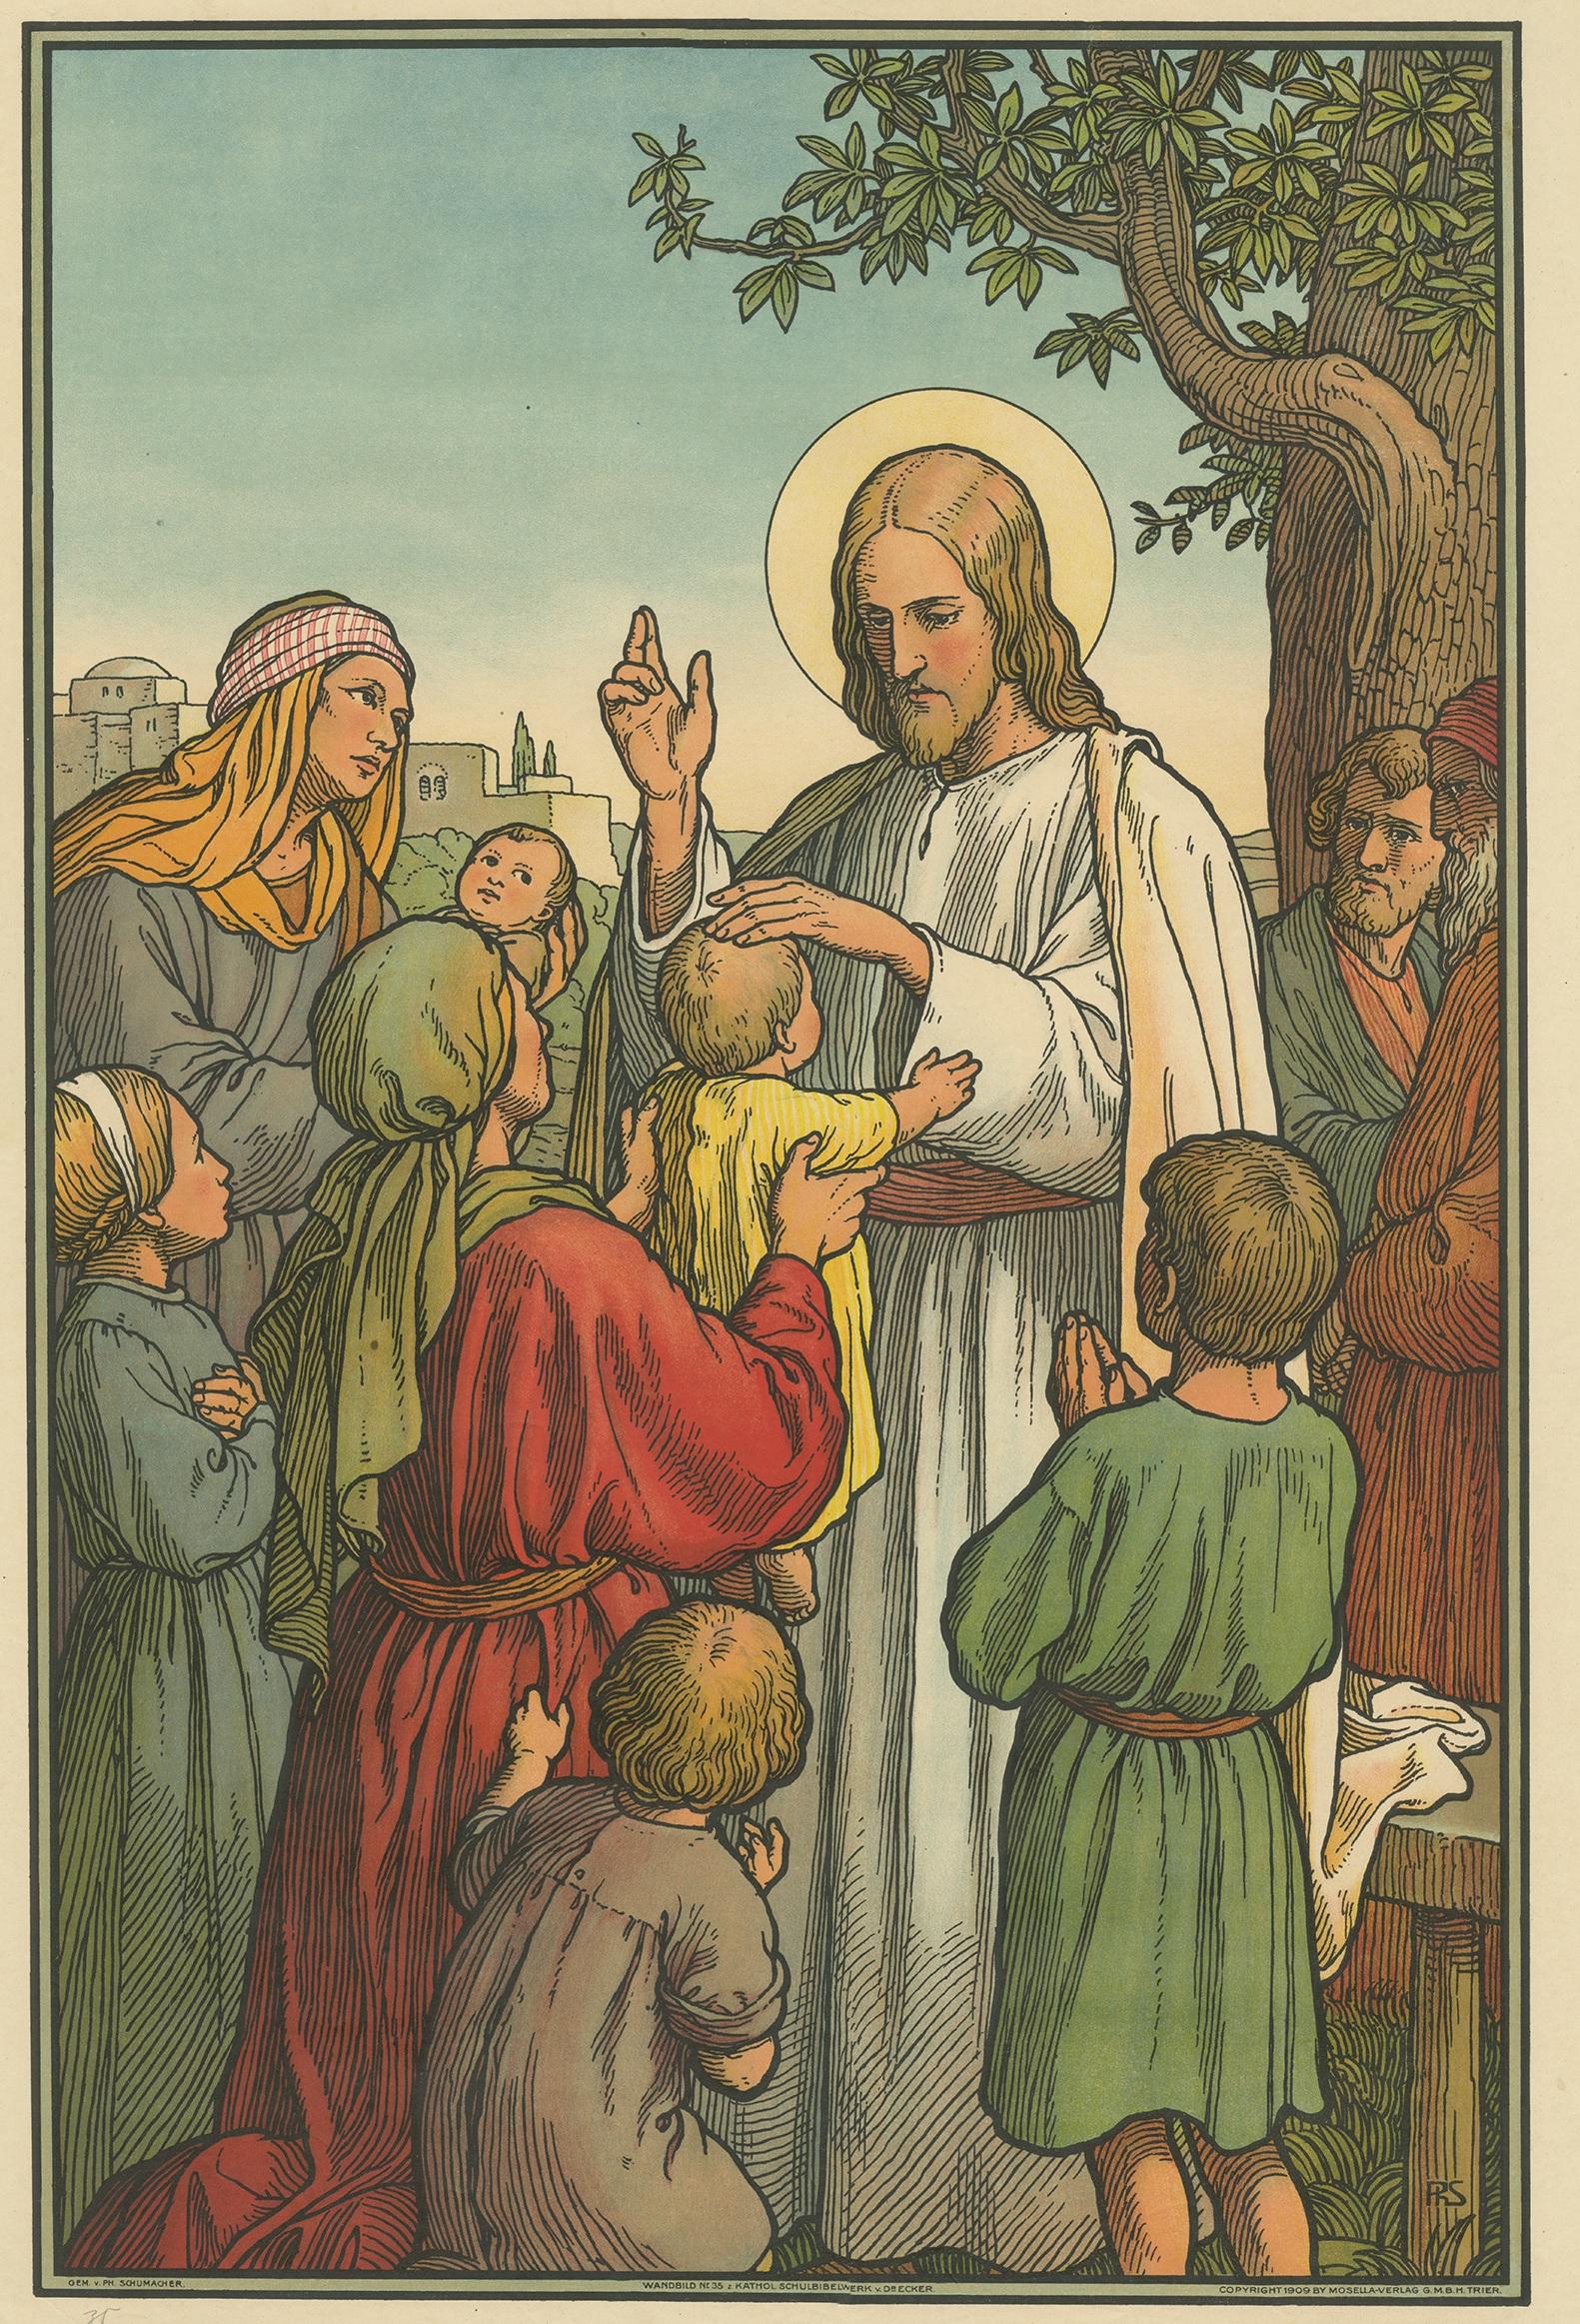 Großer antiker Druck von Christus, der kleine Kinder segnet. Erschienen im Mosella-Verlag, 1913. Dieser Druck stammt aus einer Serie mit dem Titel 